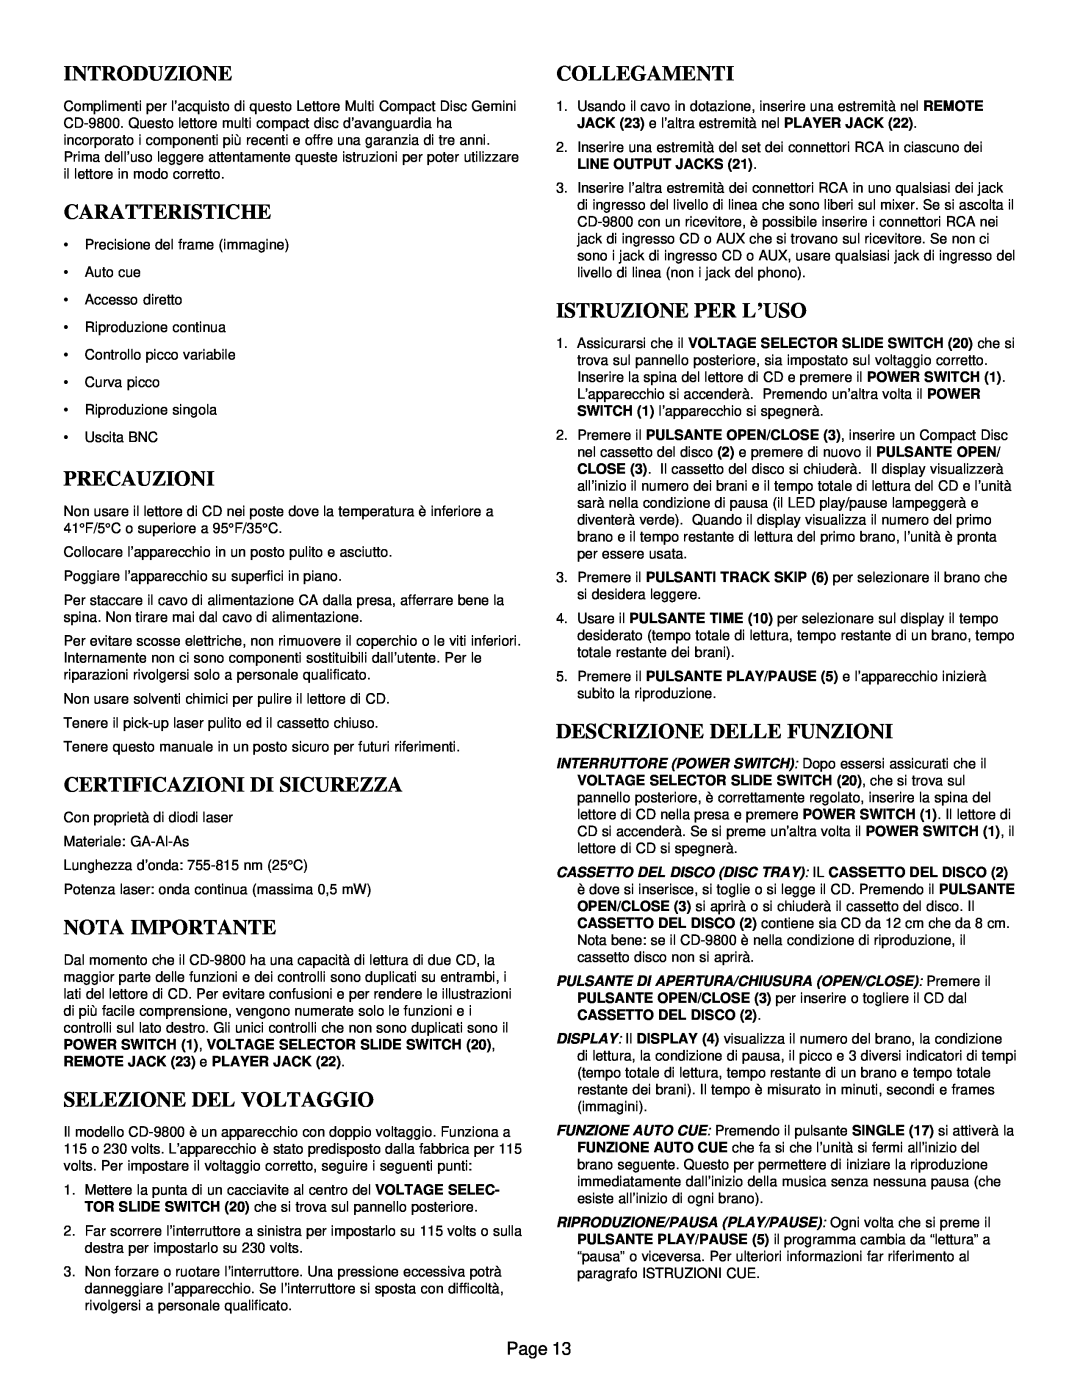 Gemini CD-9800 Introduzione, Caratteristiche, Precauzioni, Certificazioni Di Sicurezza, Selezione Del Voltaggio, Page 